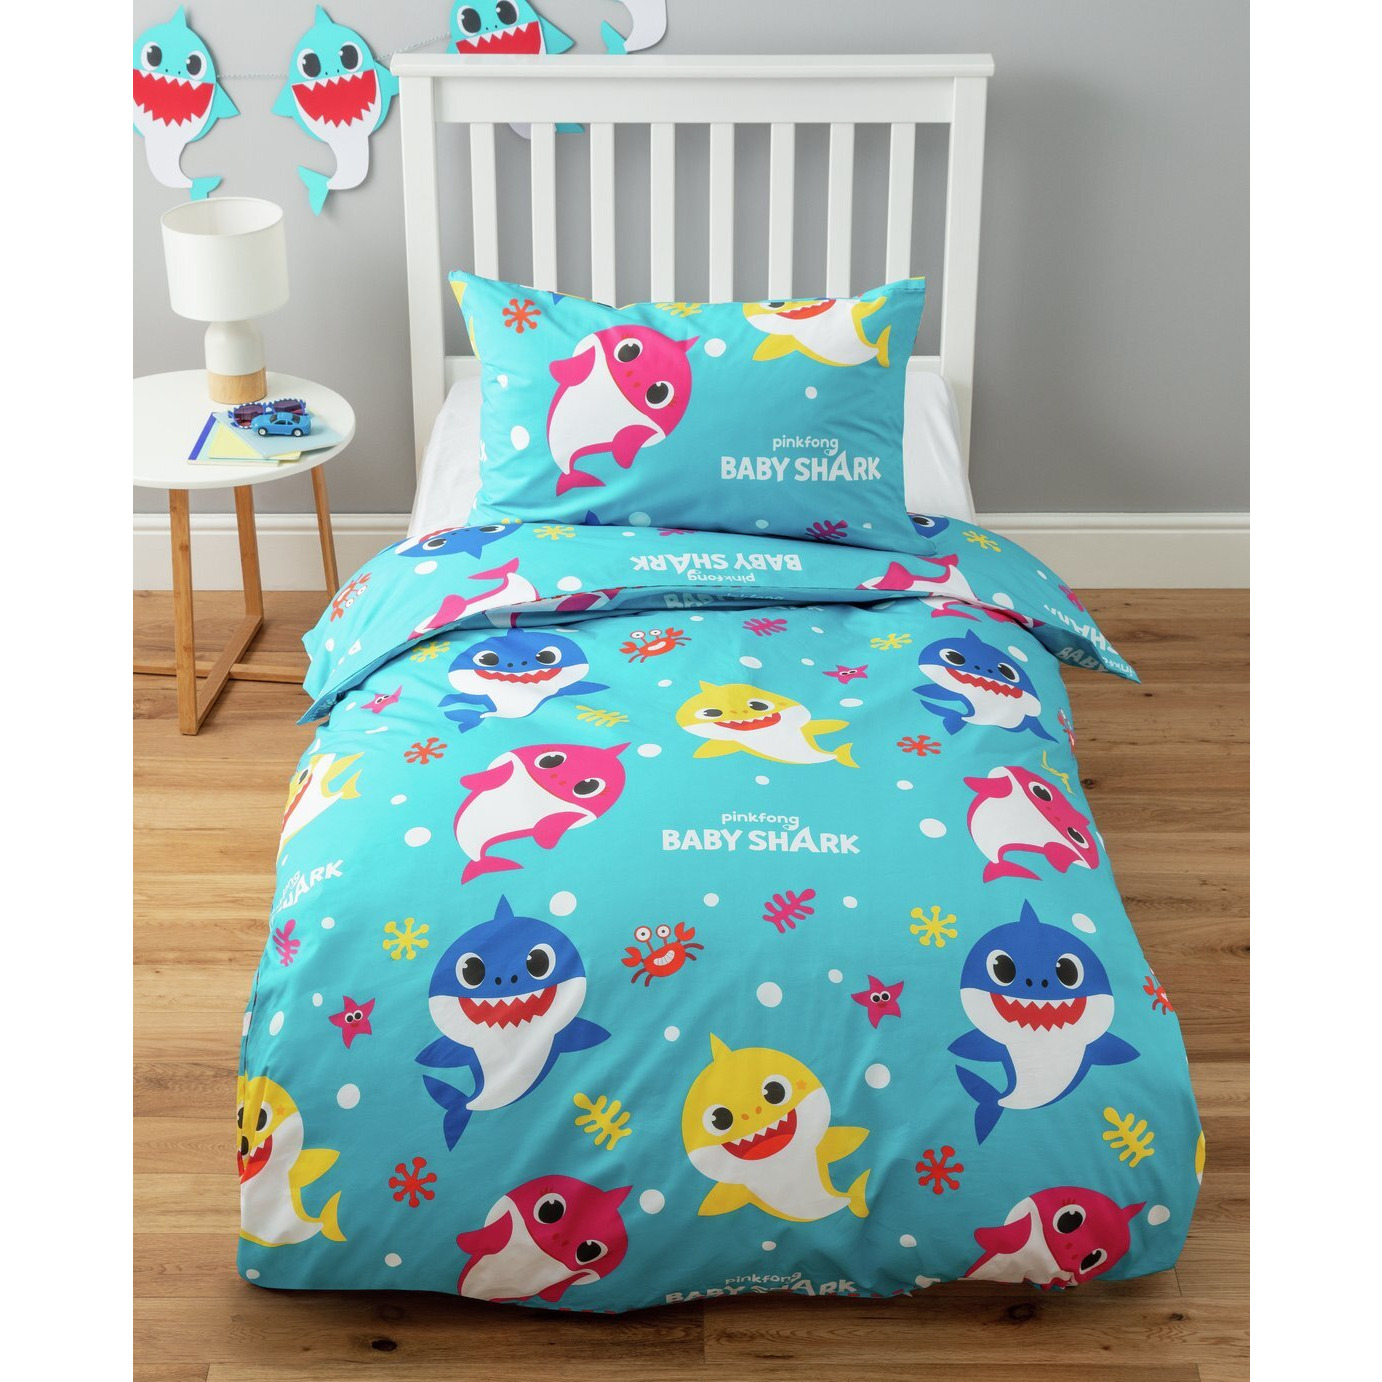 Baby Shark Kids Blue Bedding Set - Toddler - image 1